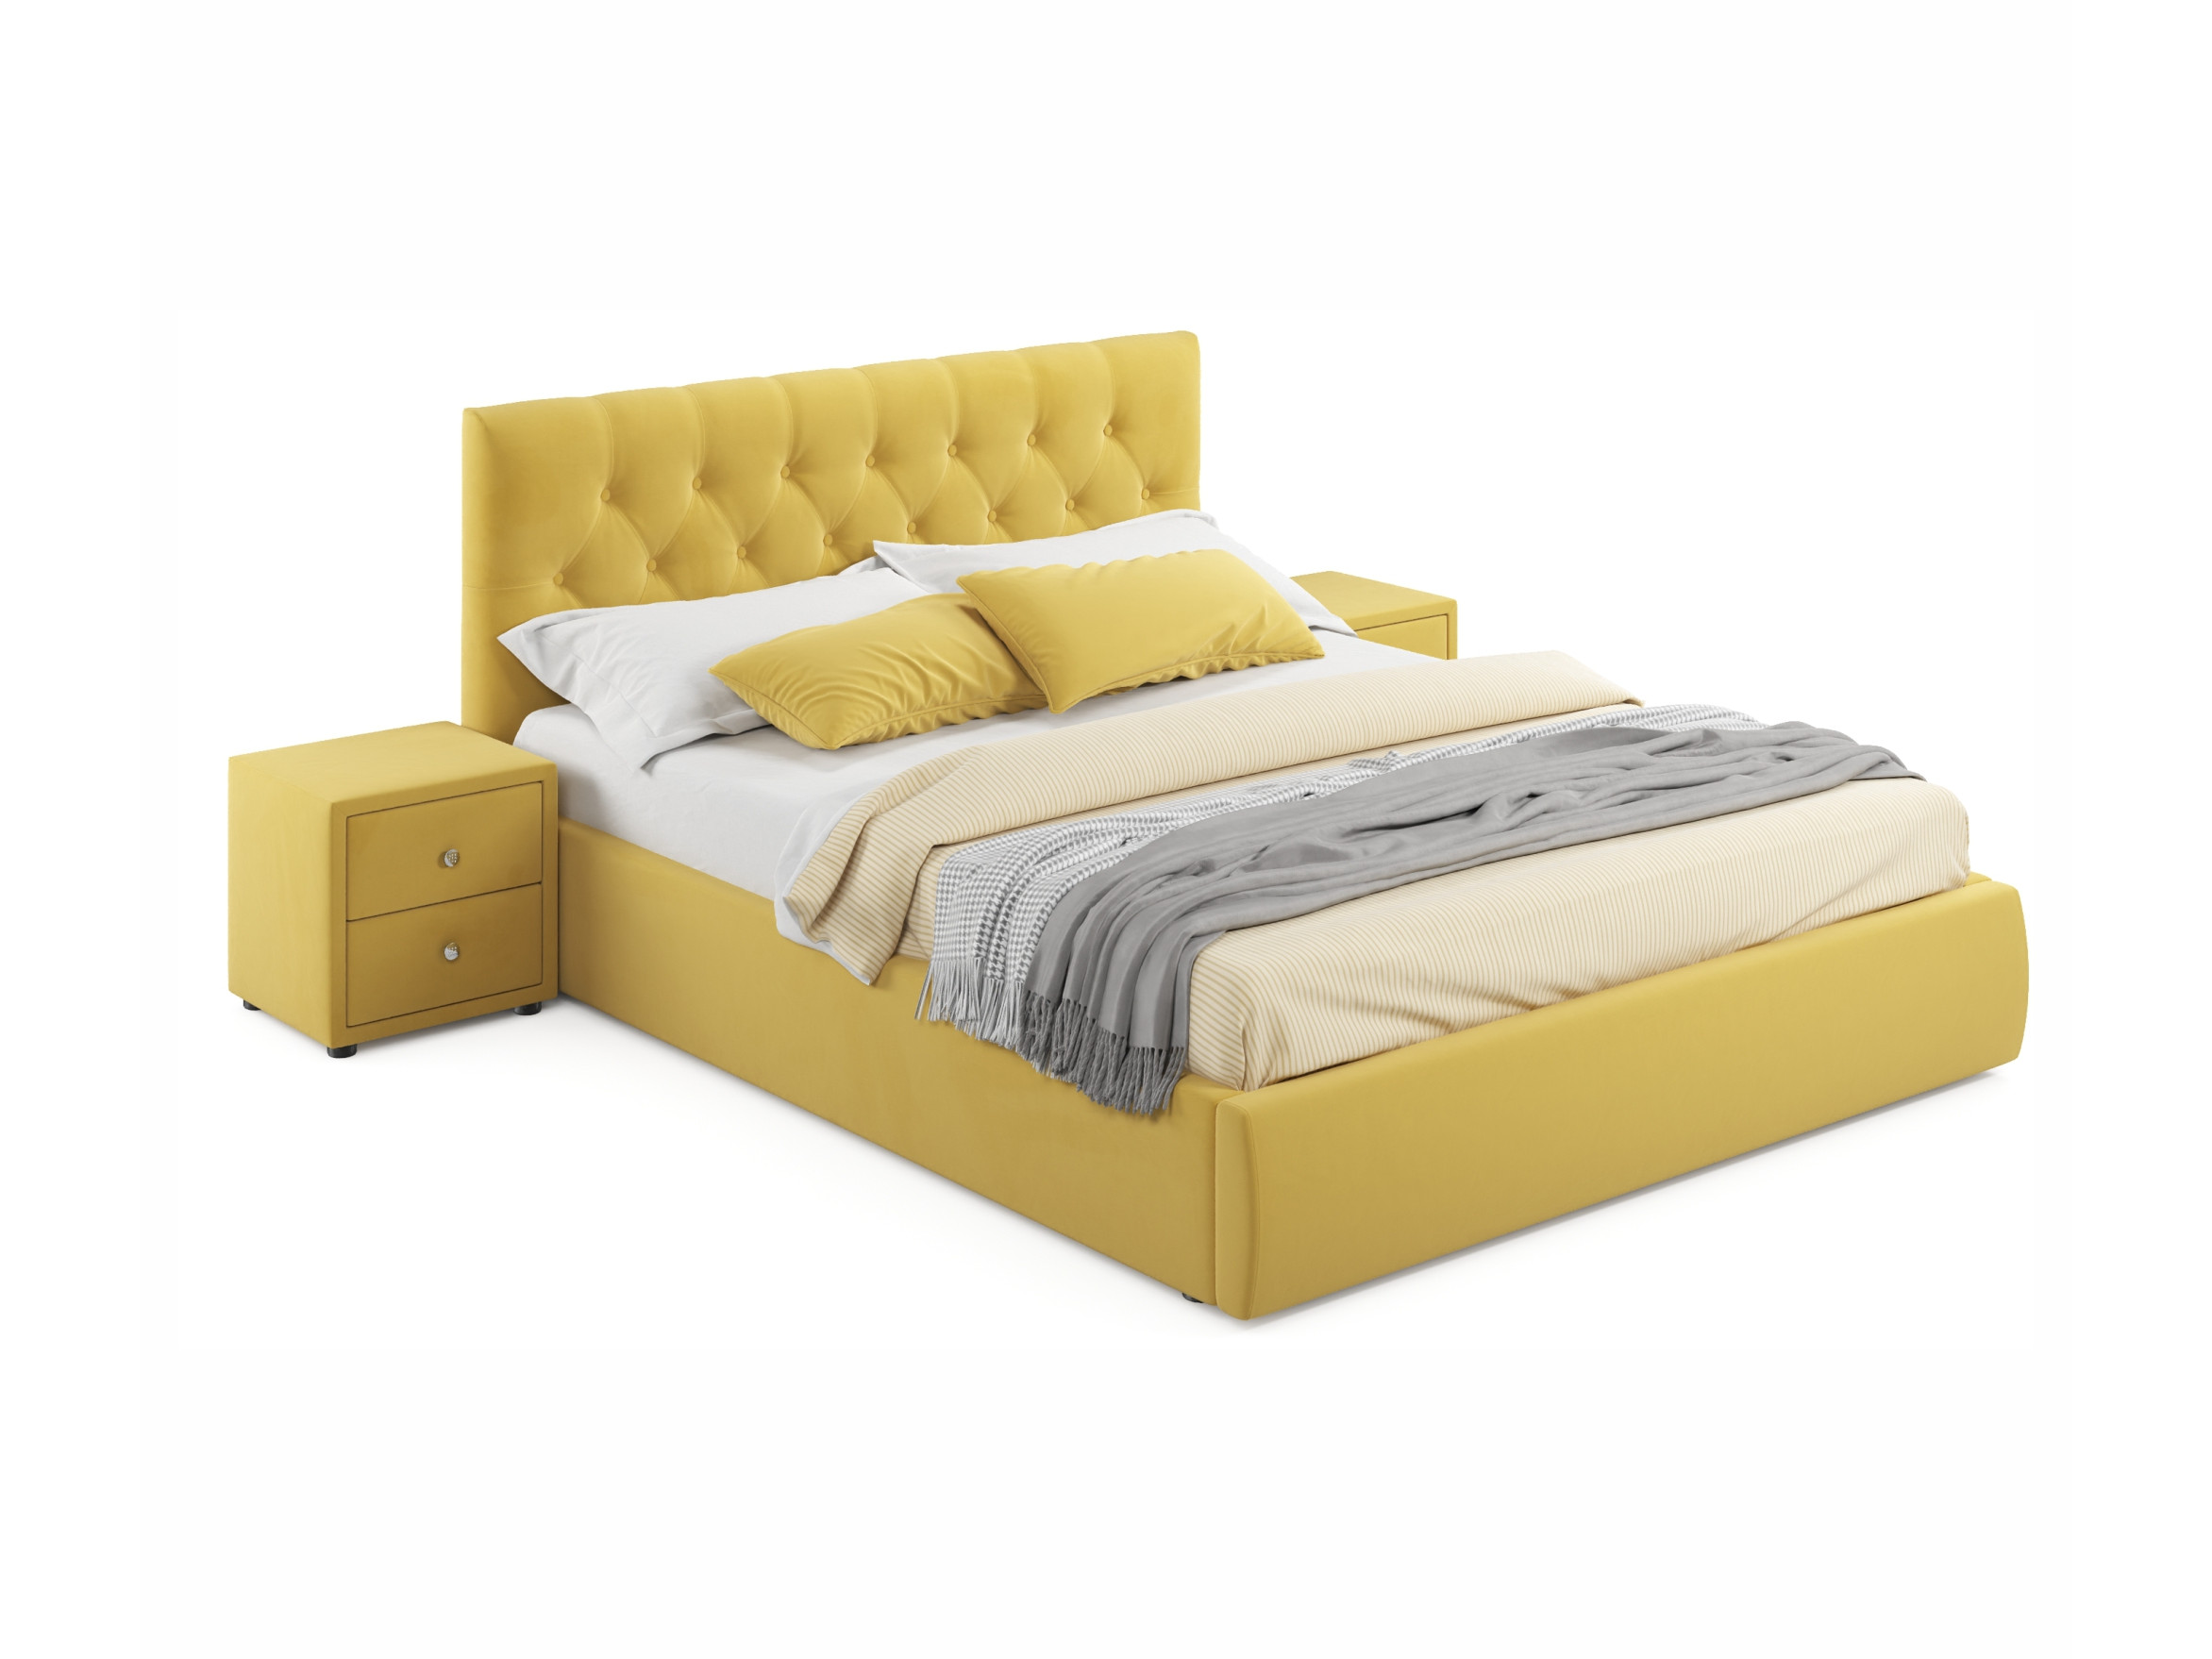 Мягкая кровать с тумбами Verona 1600 желтая с подъемным механизмом желтый, Желтый, Велюр, ДСП мягкая кровать с тумбами verona 1600 желтая с подъемным механизмом желтый желтый велюр дсп